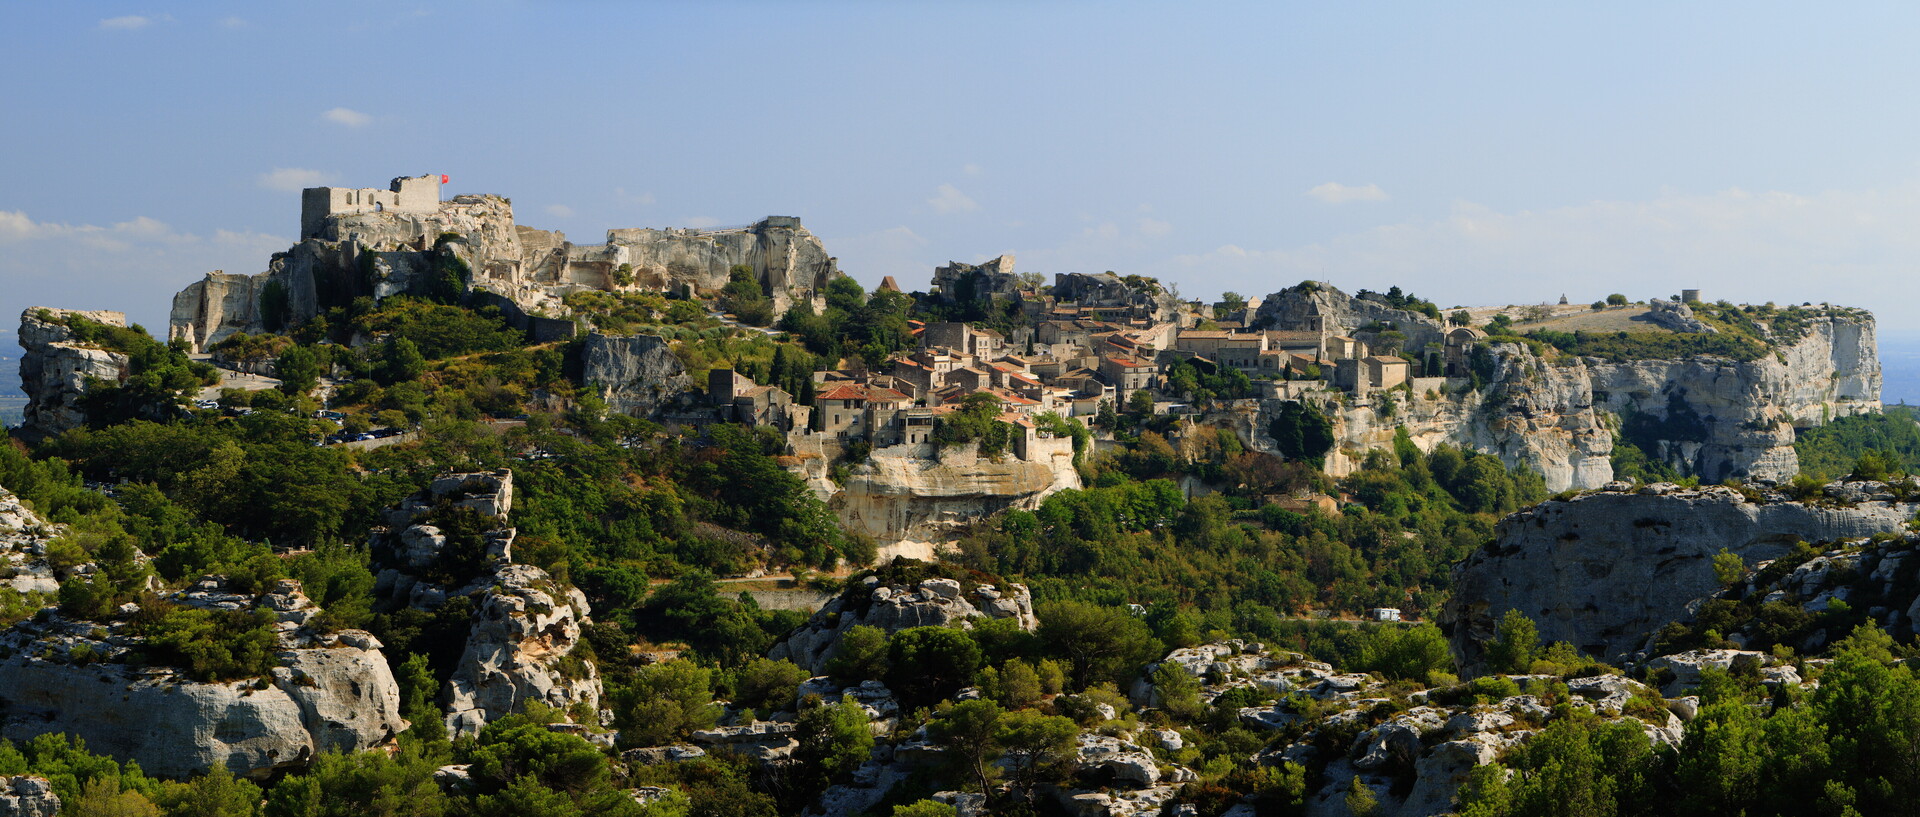 Südfranzösicher Ort "Les Baux de Provence". Das Ortbild wird dominiert von einer Burgruine.